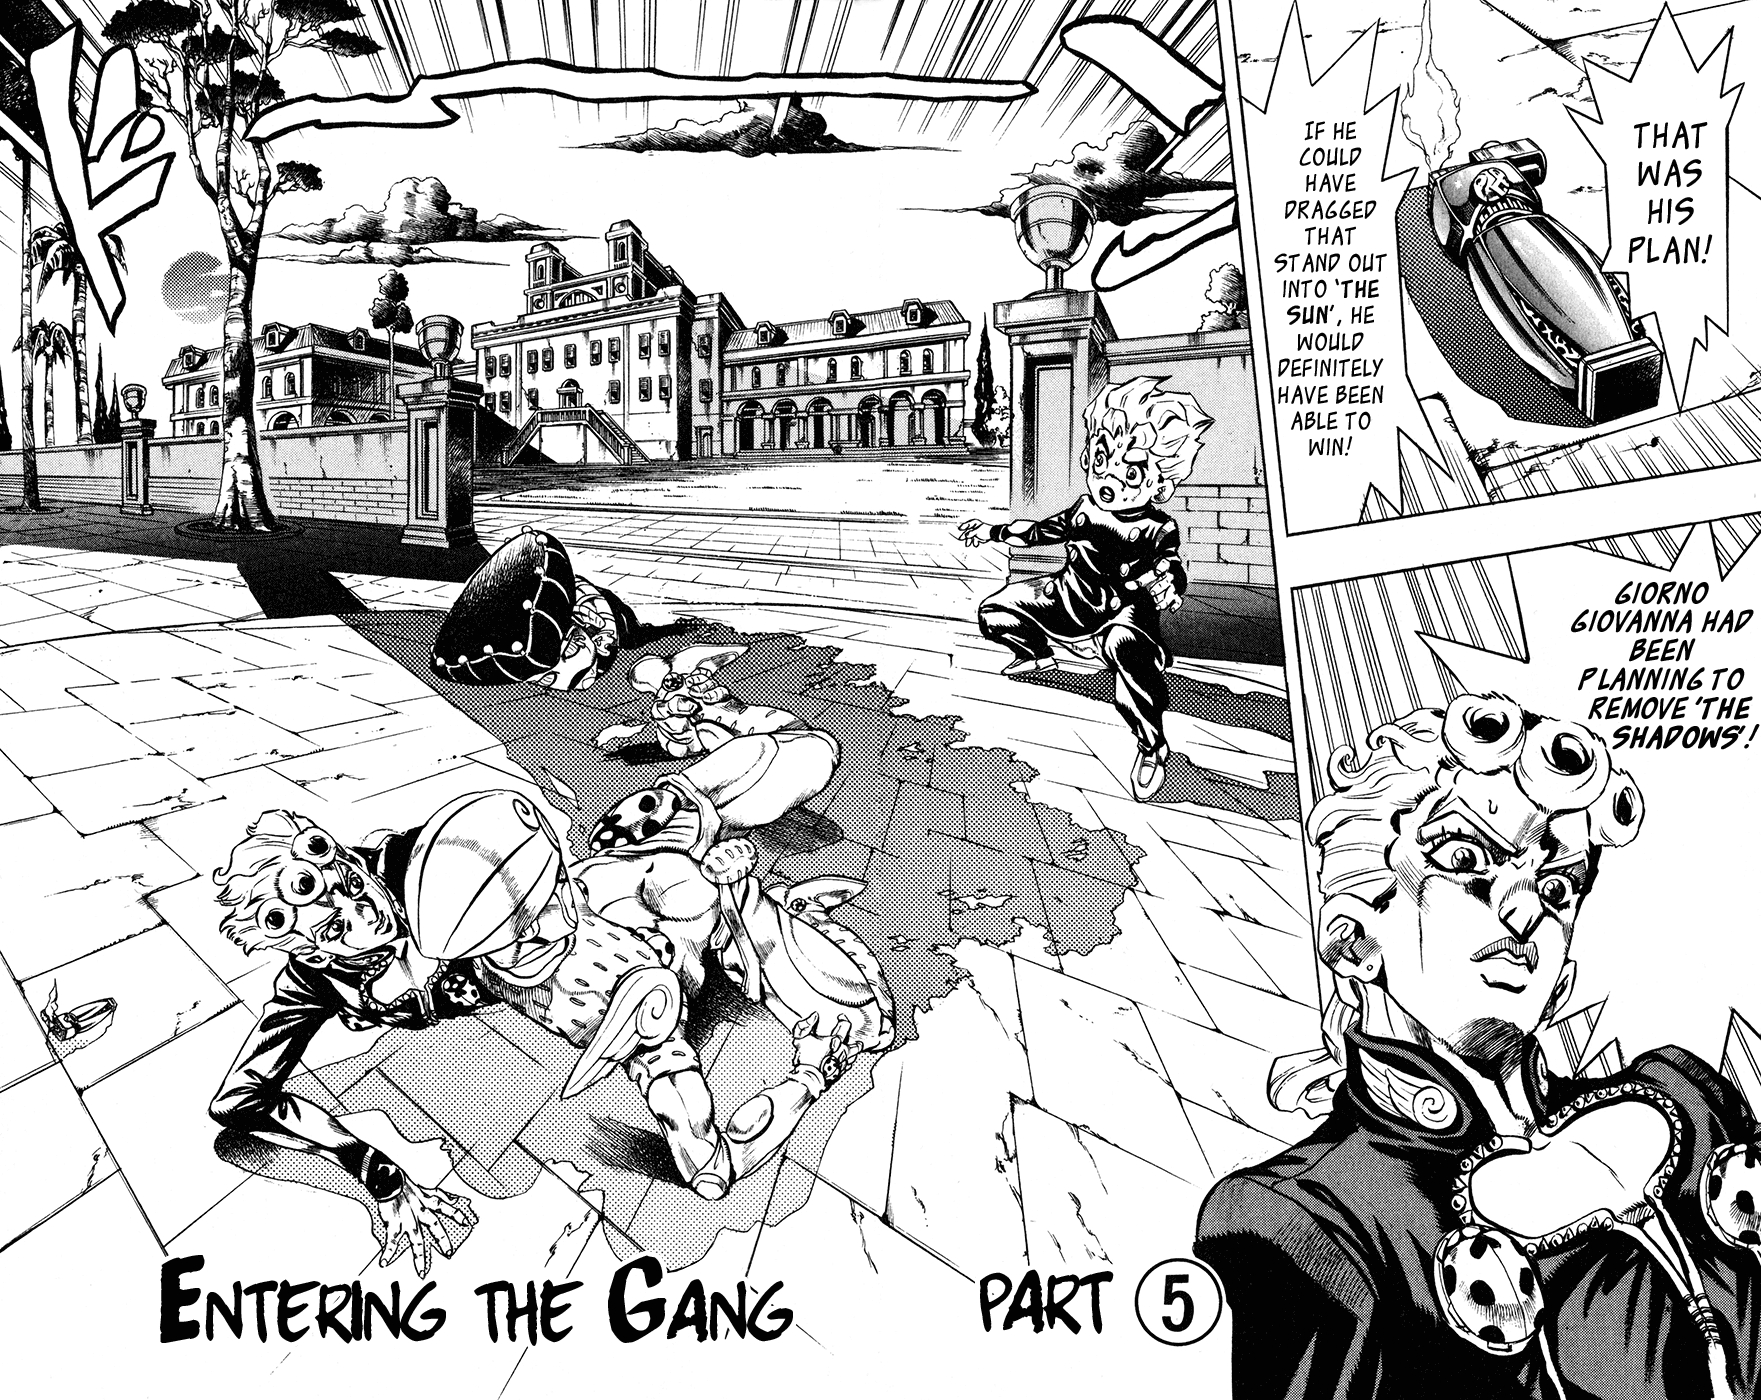 Jojo's Bizarre Adventure Part 5 - Vento Aureo Vol.2 Chapter 15: Entering The Gang Part 5 - Picture 2